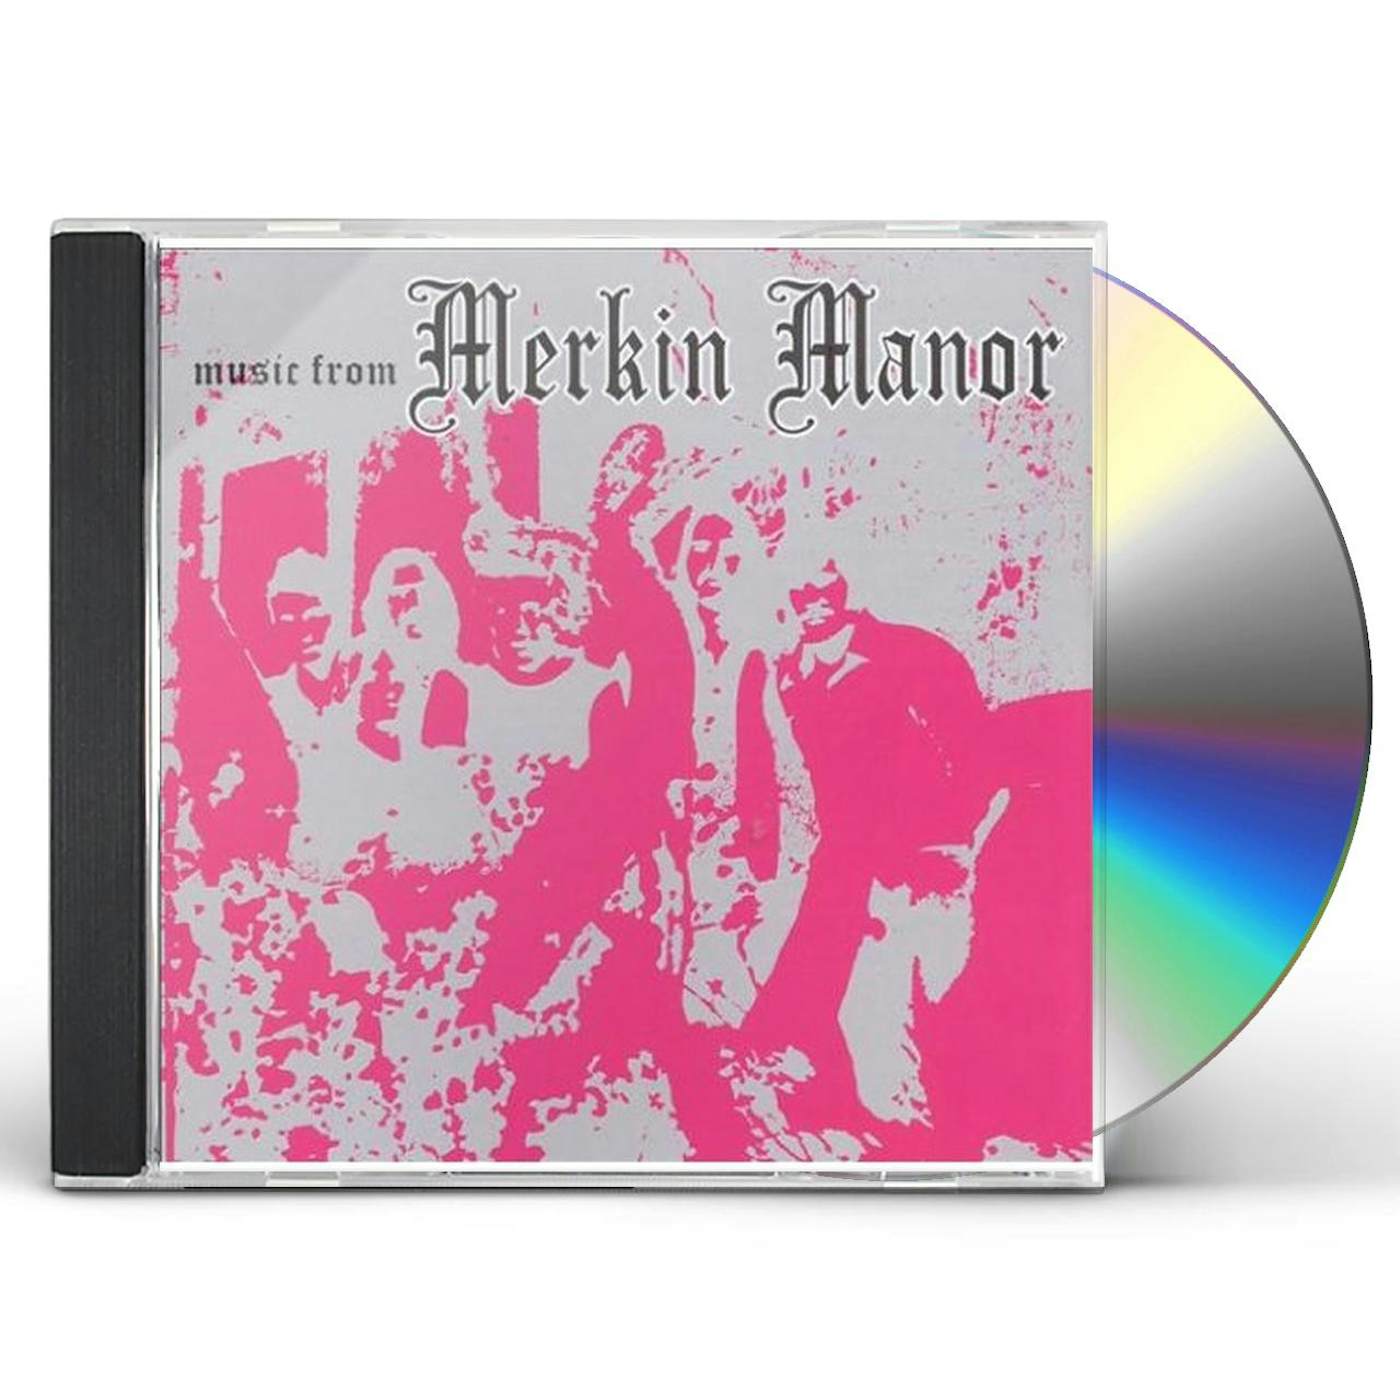 MUSIC FROM MERKIN MANOR CD